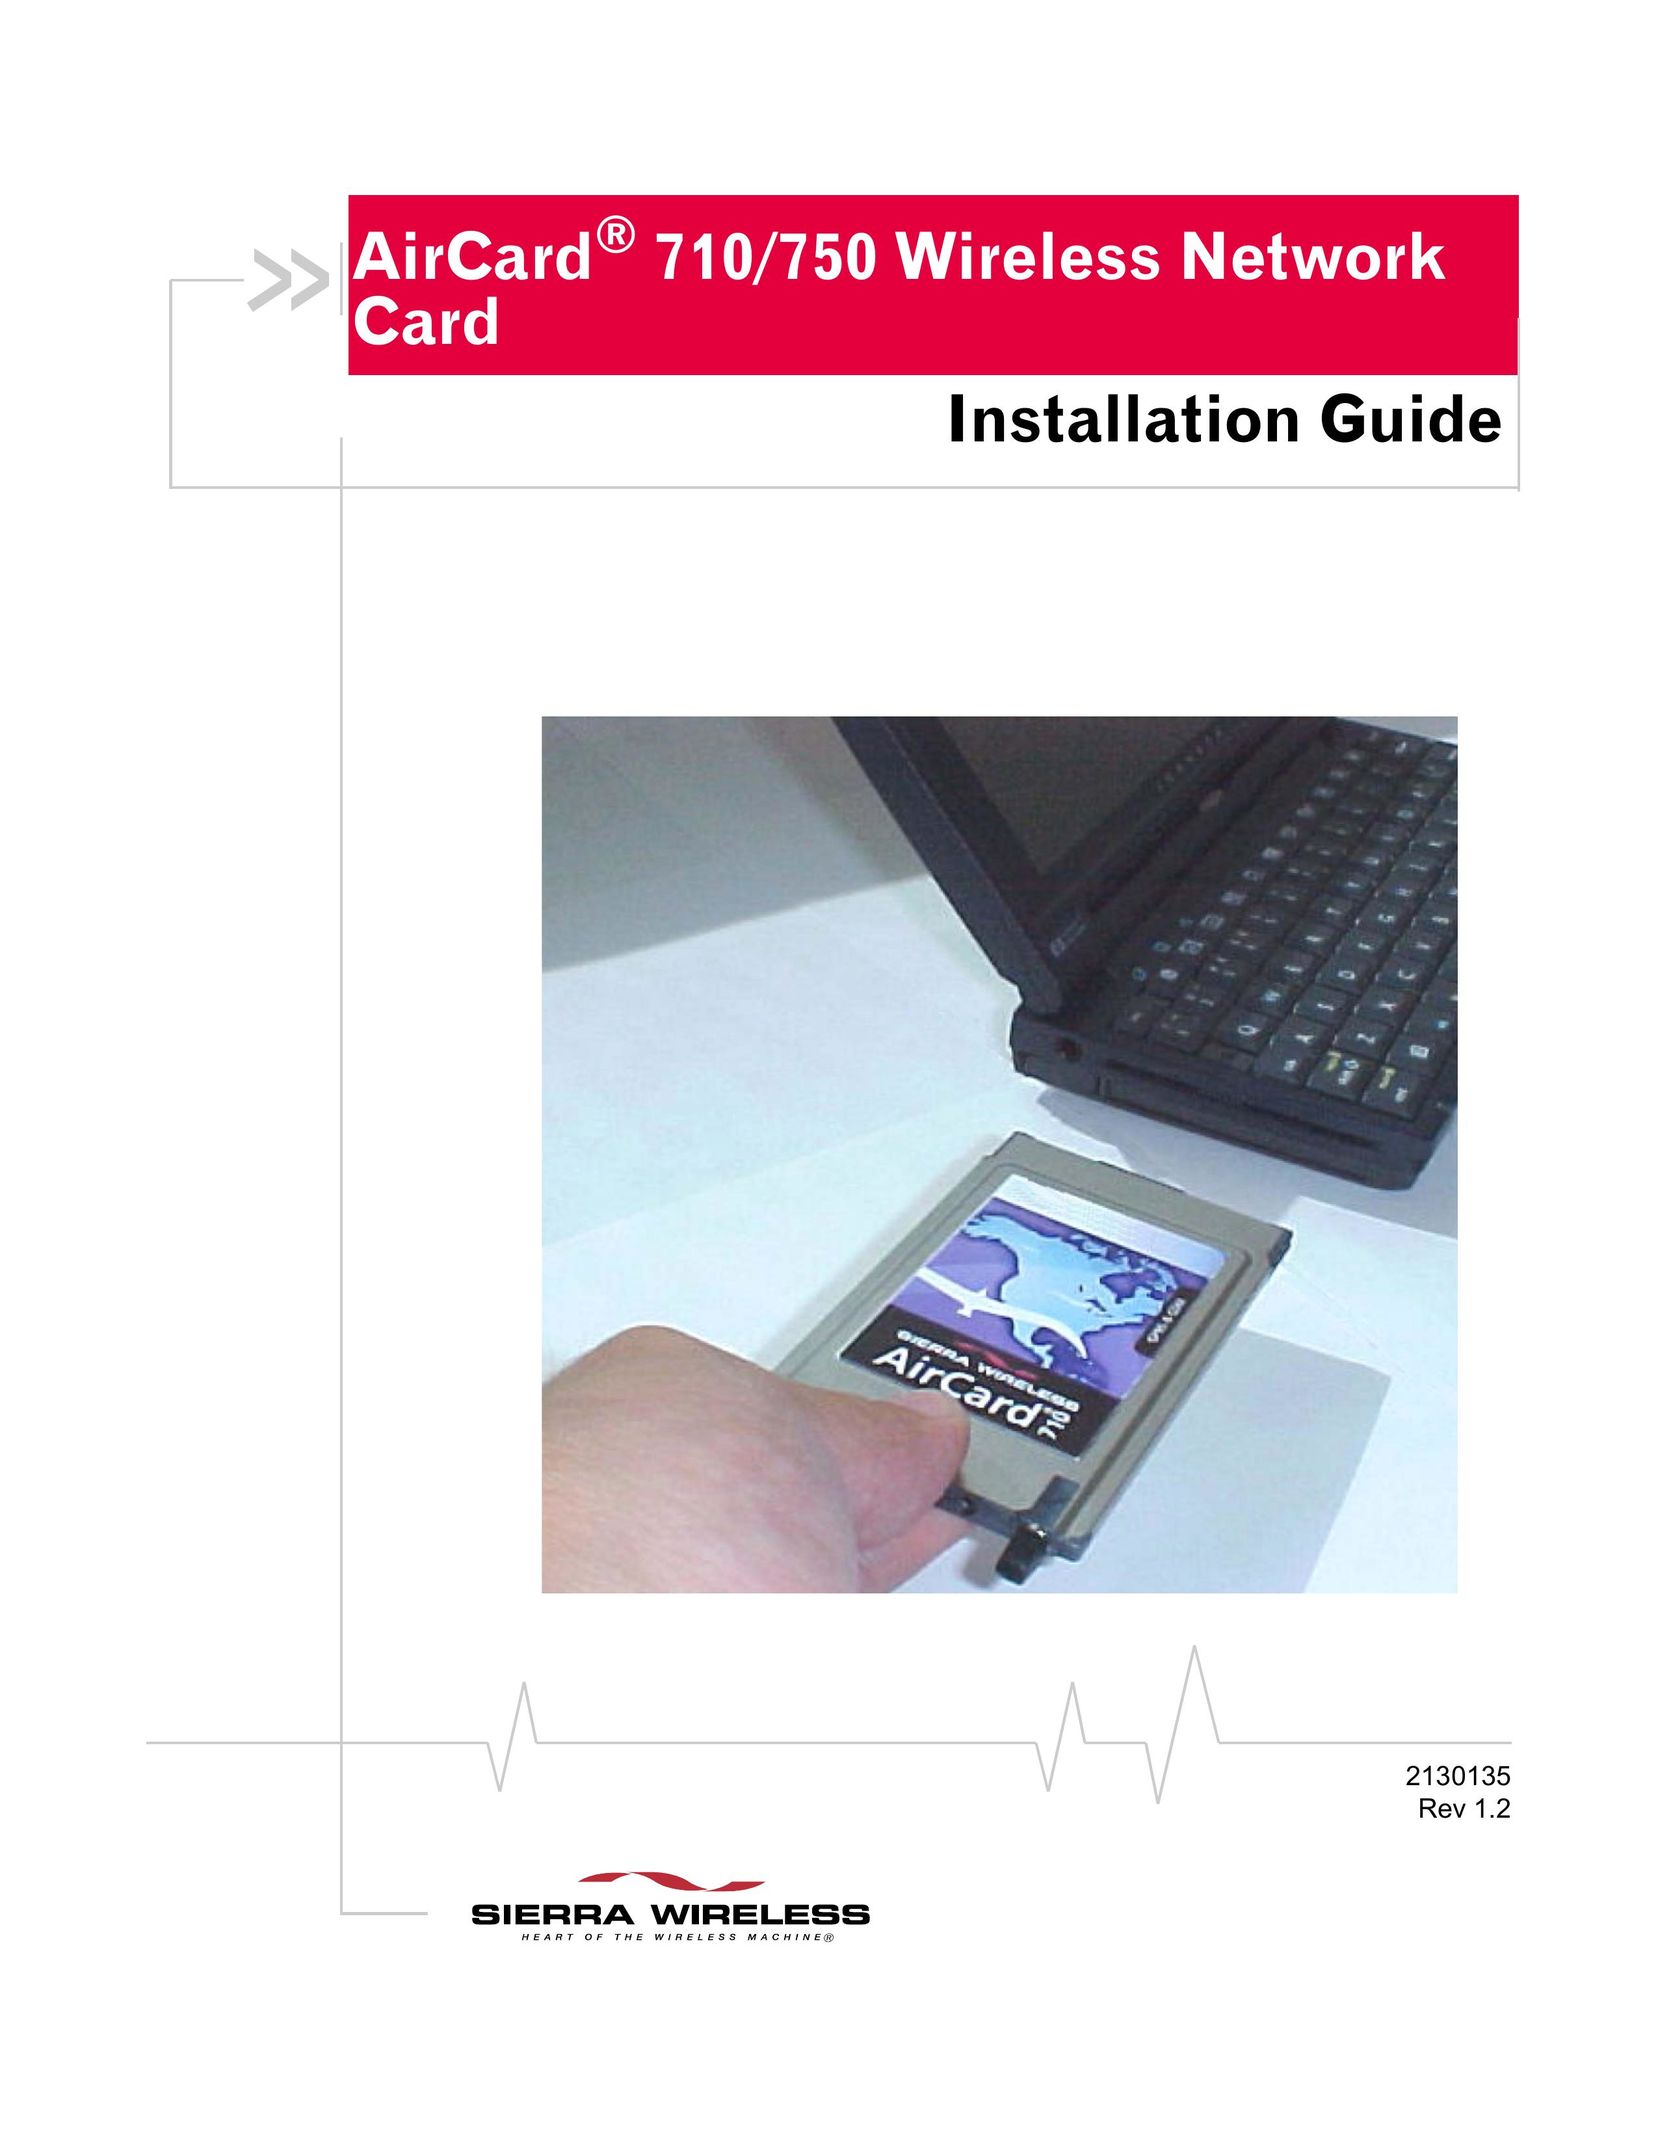 Sierra Wireless AirCard 710 Network Card User Manual